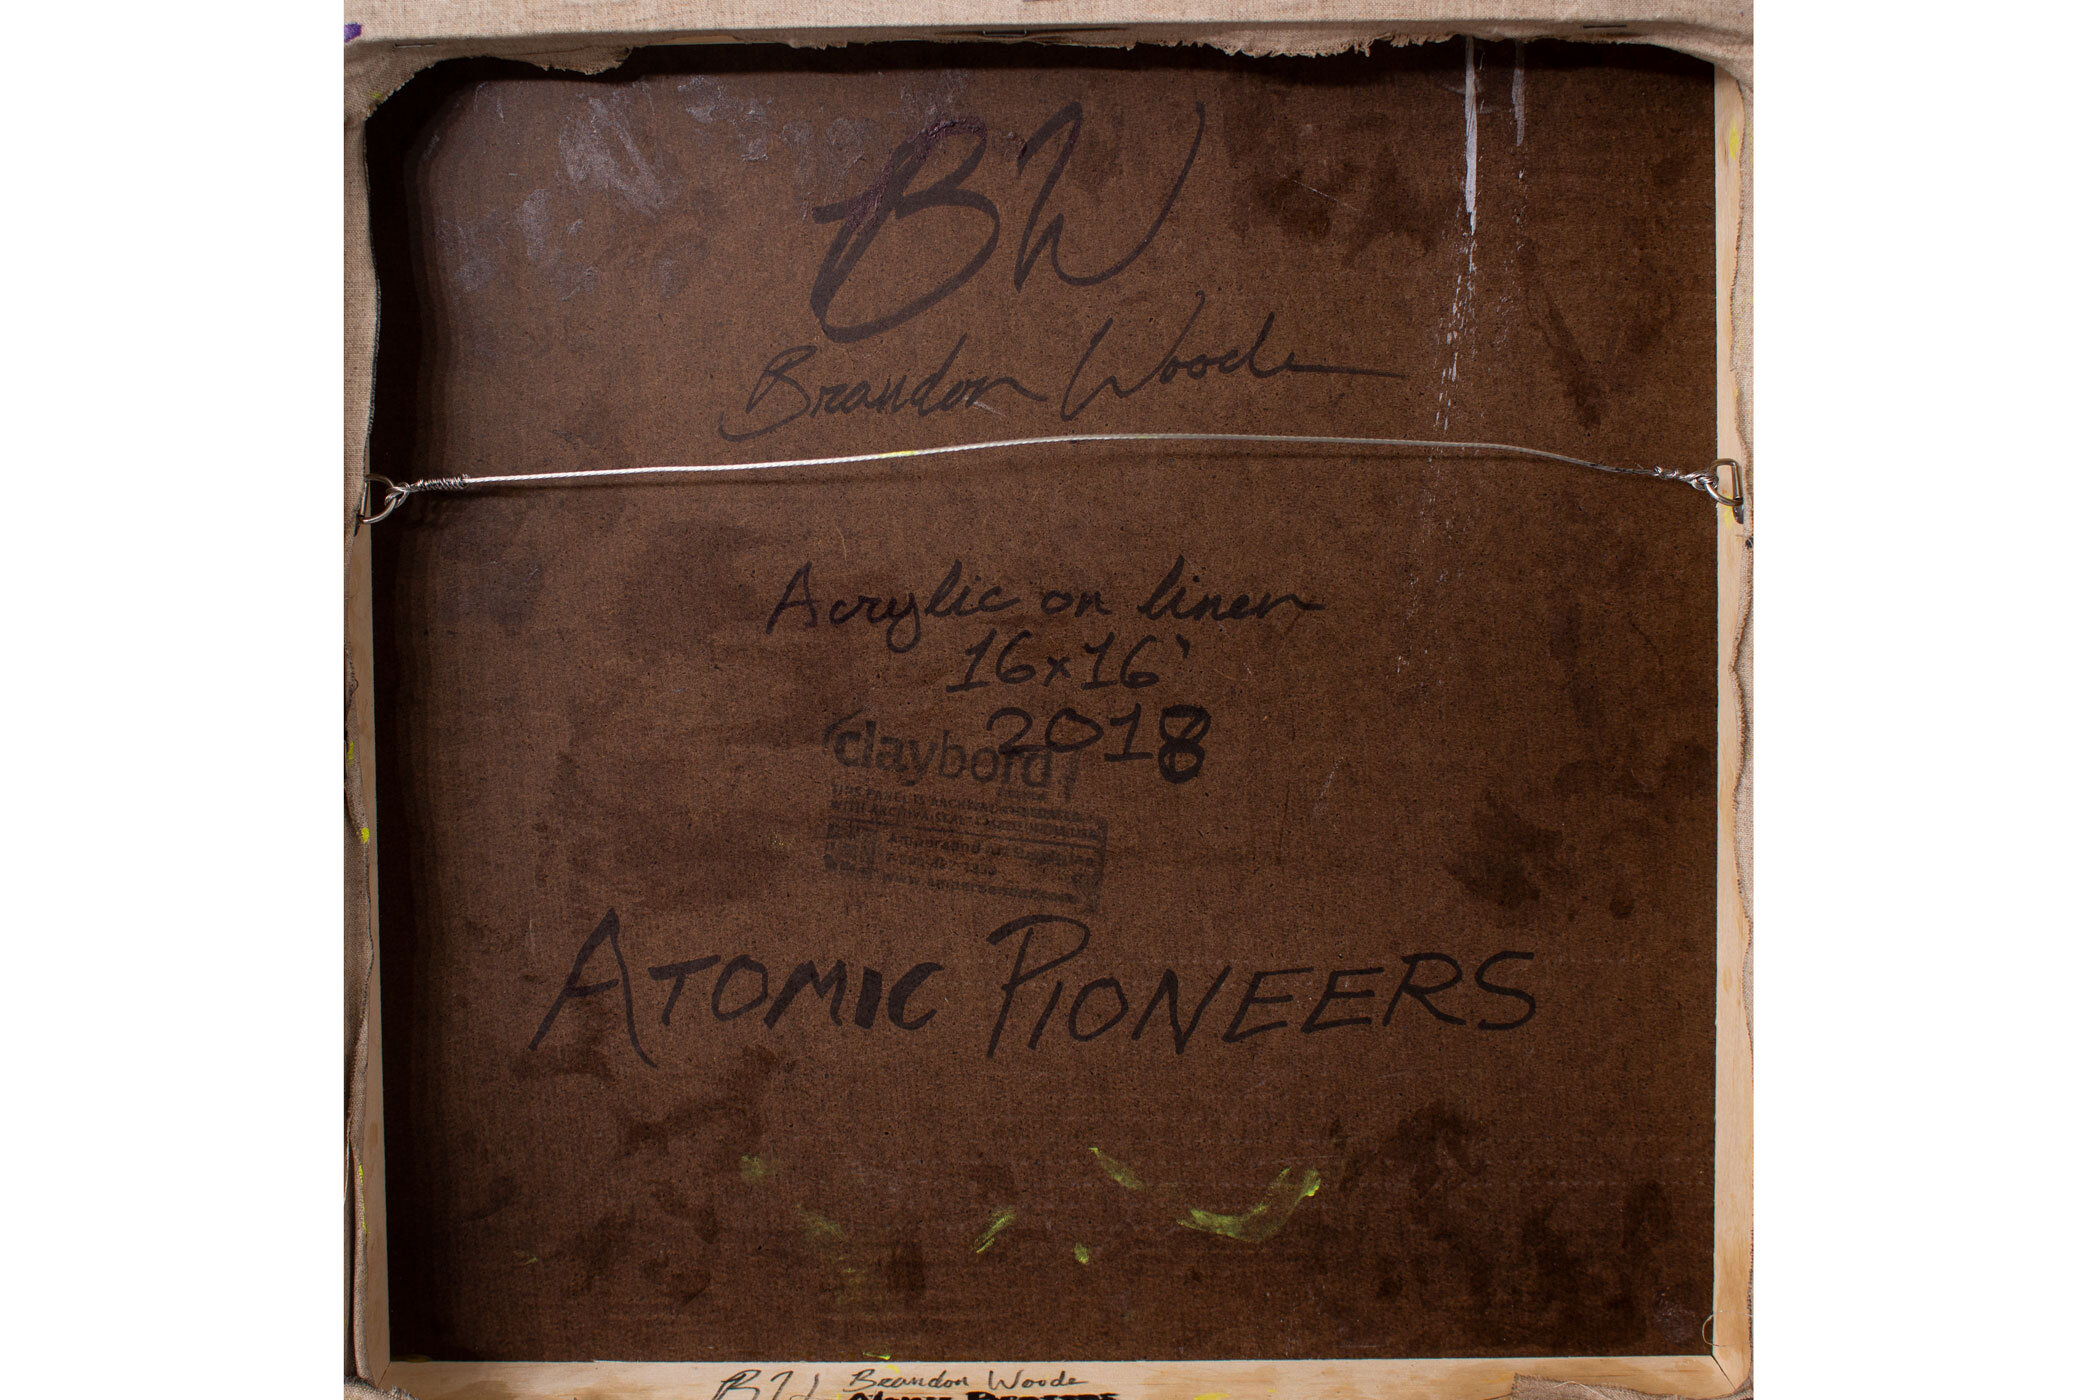 Brandon Woods: "Atomic Pioneers"